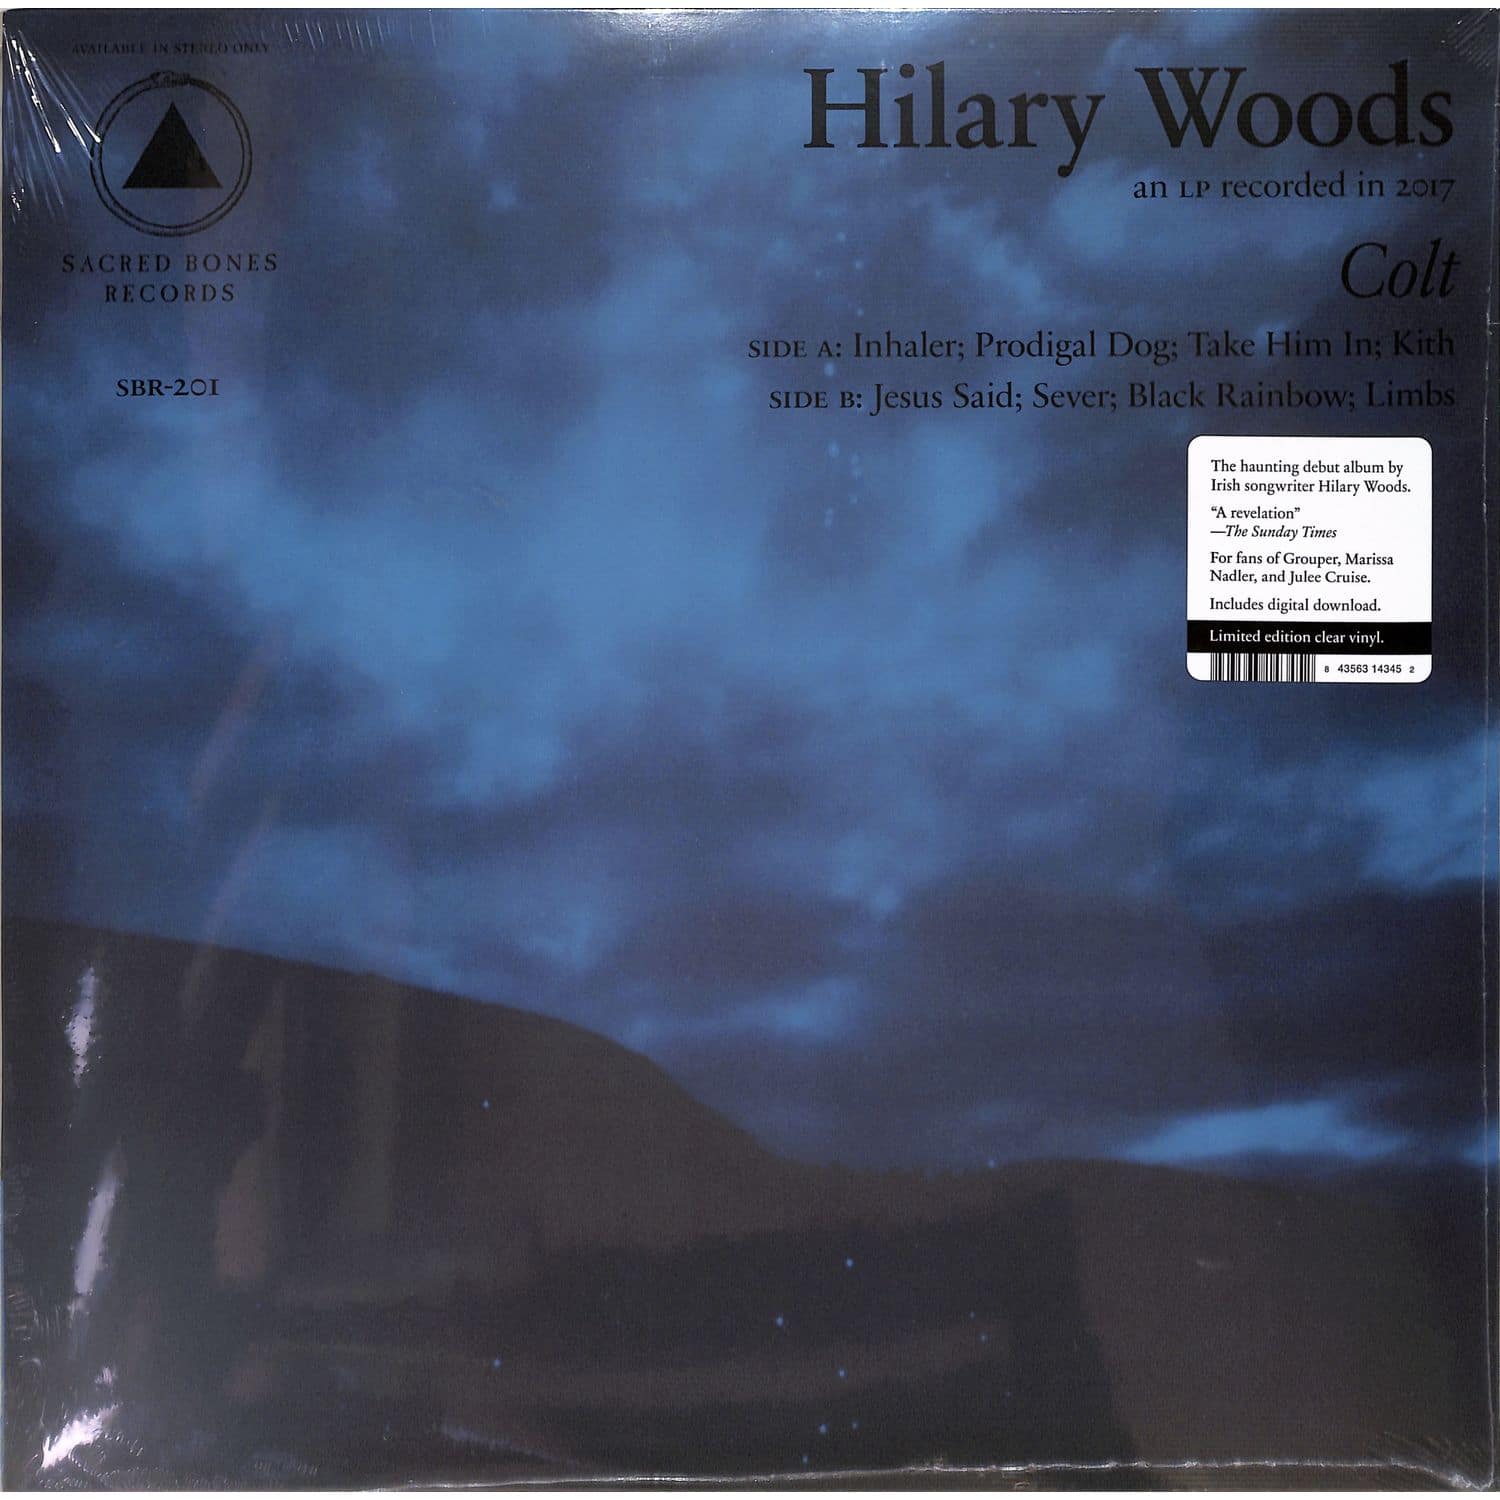 Hilary Woods - COLT 